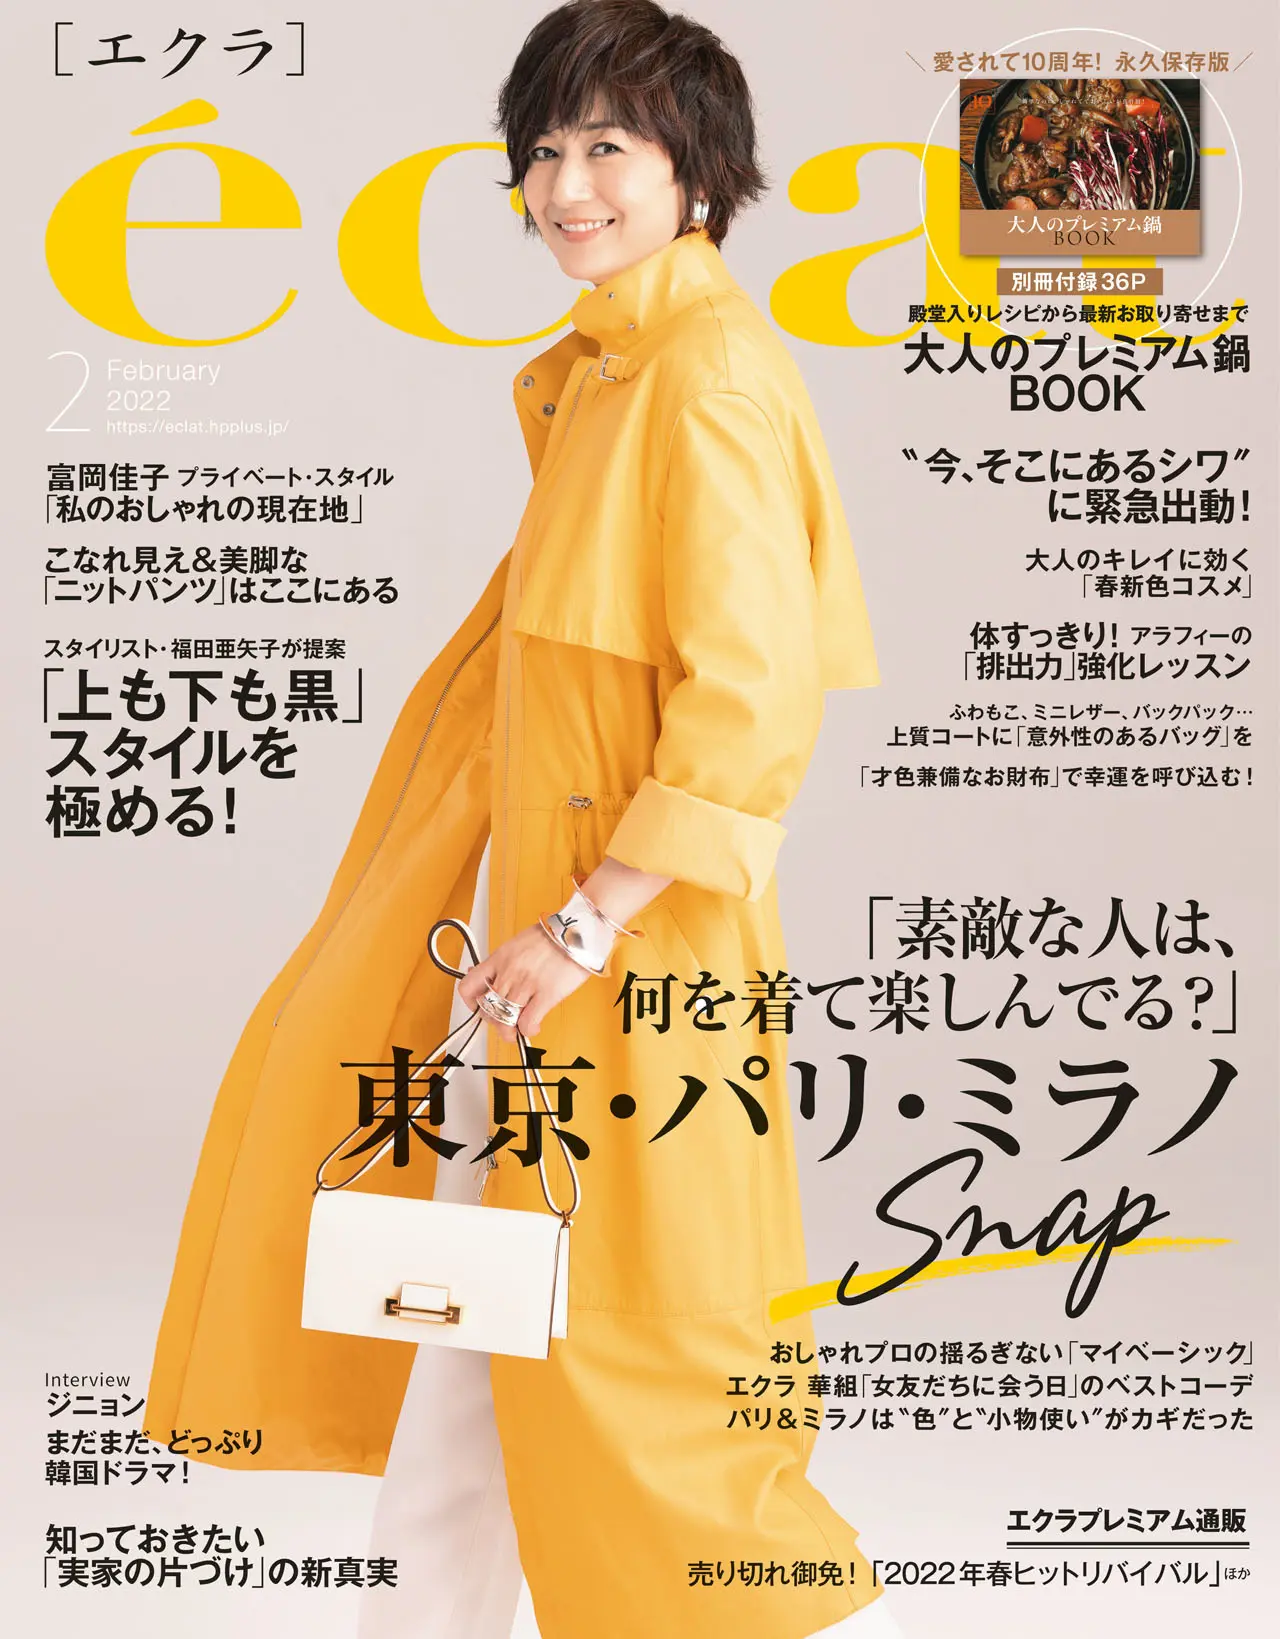 エクラ2月号表紙。カバーモデルは富岡佳子さん。